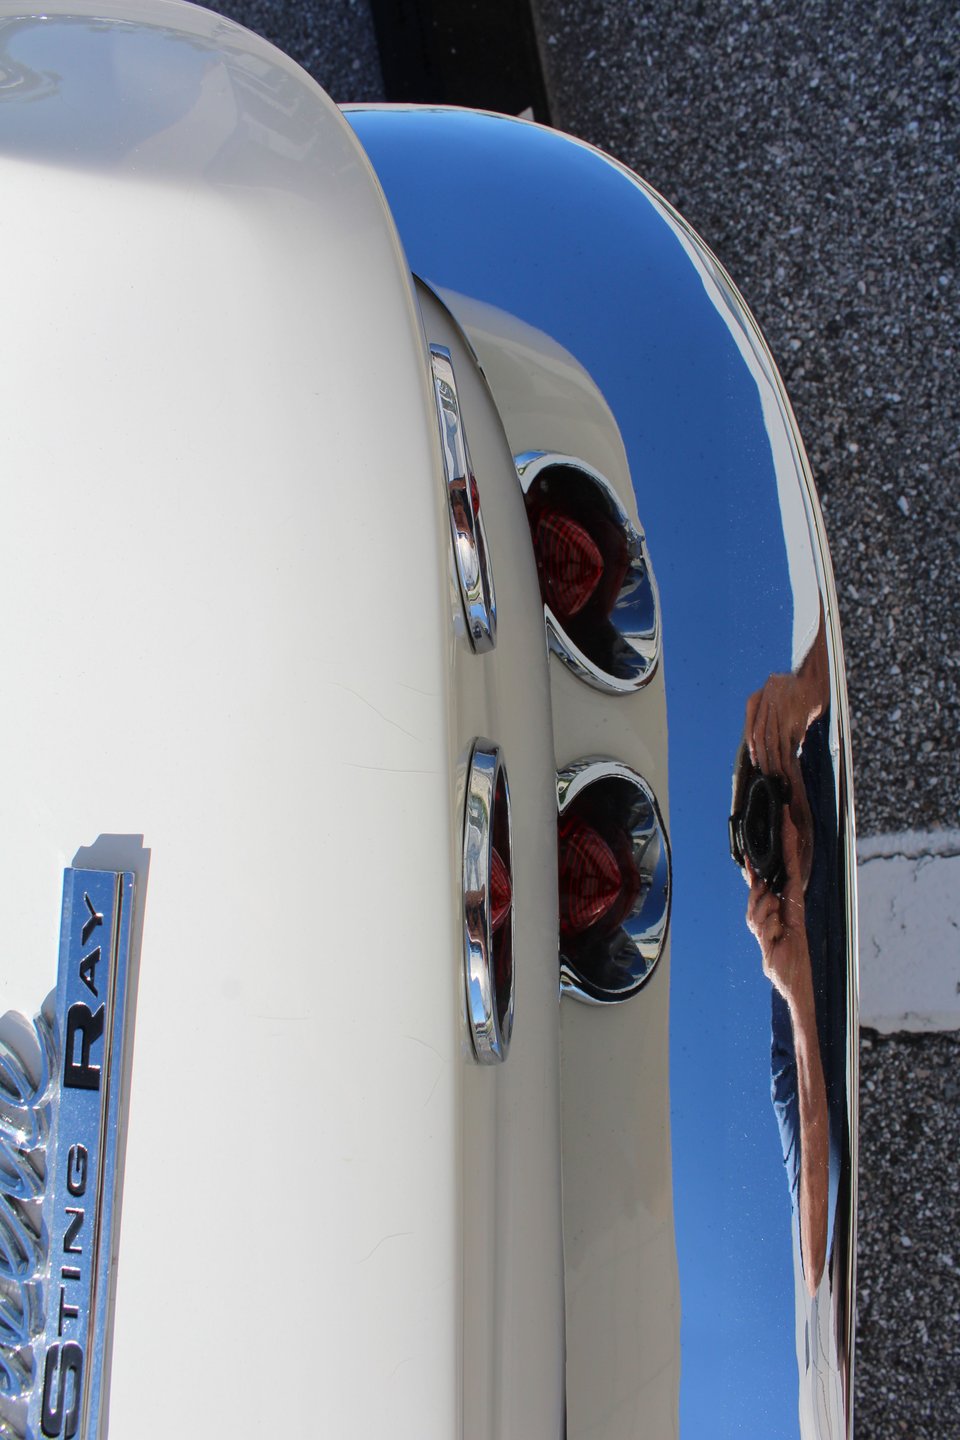 For Sale 1963 Chevrolet Corvette Spilt Window